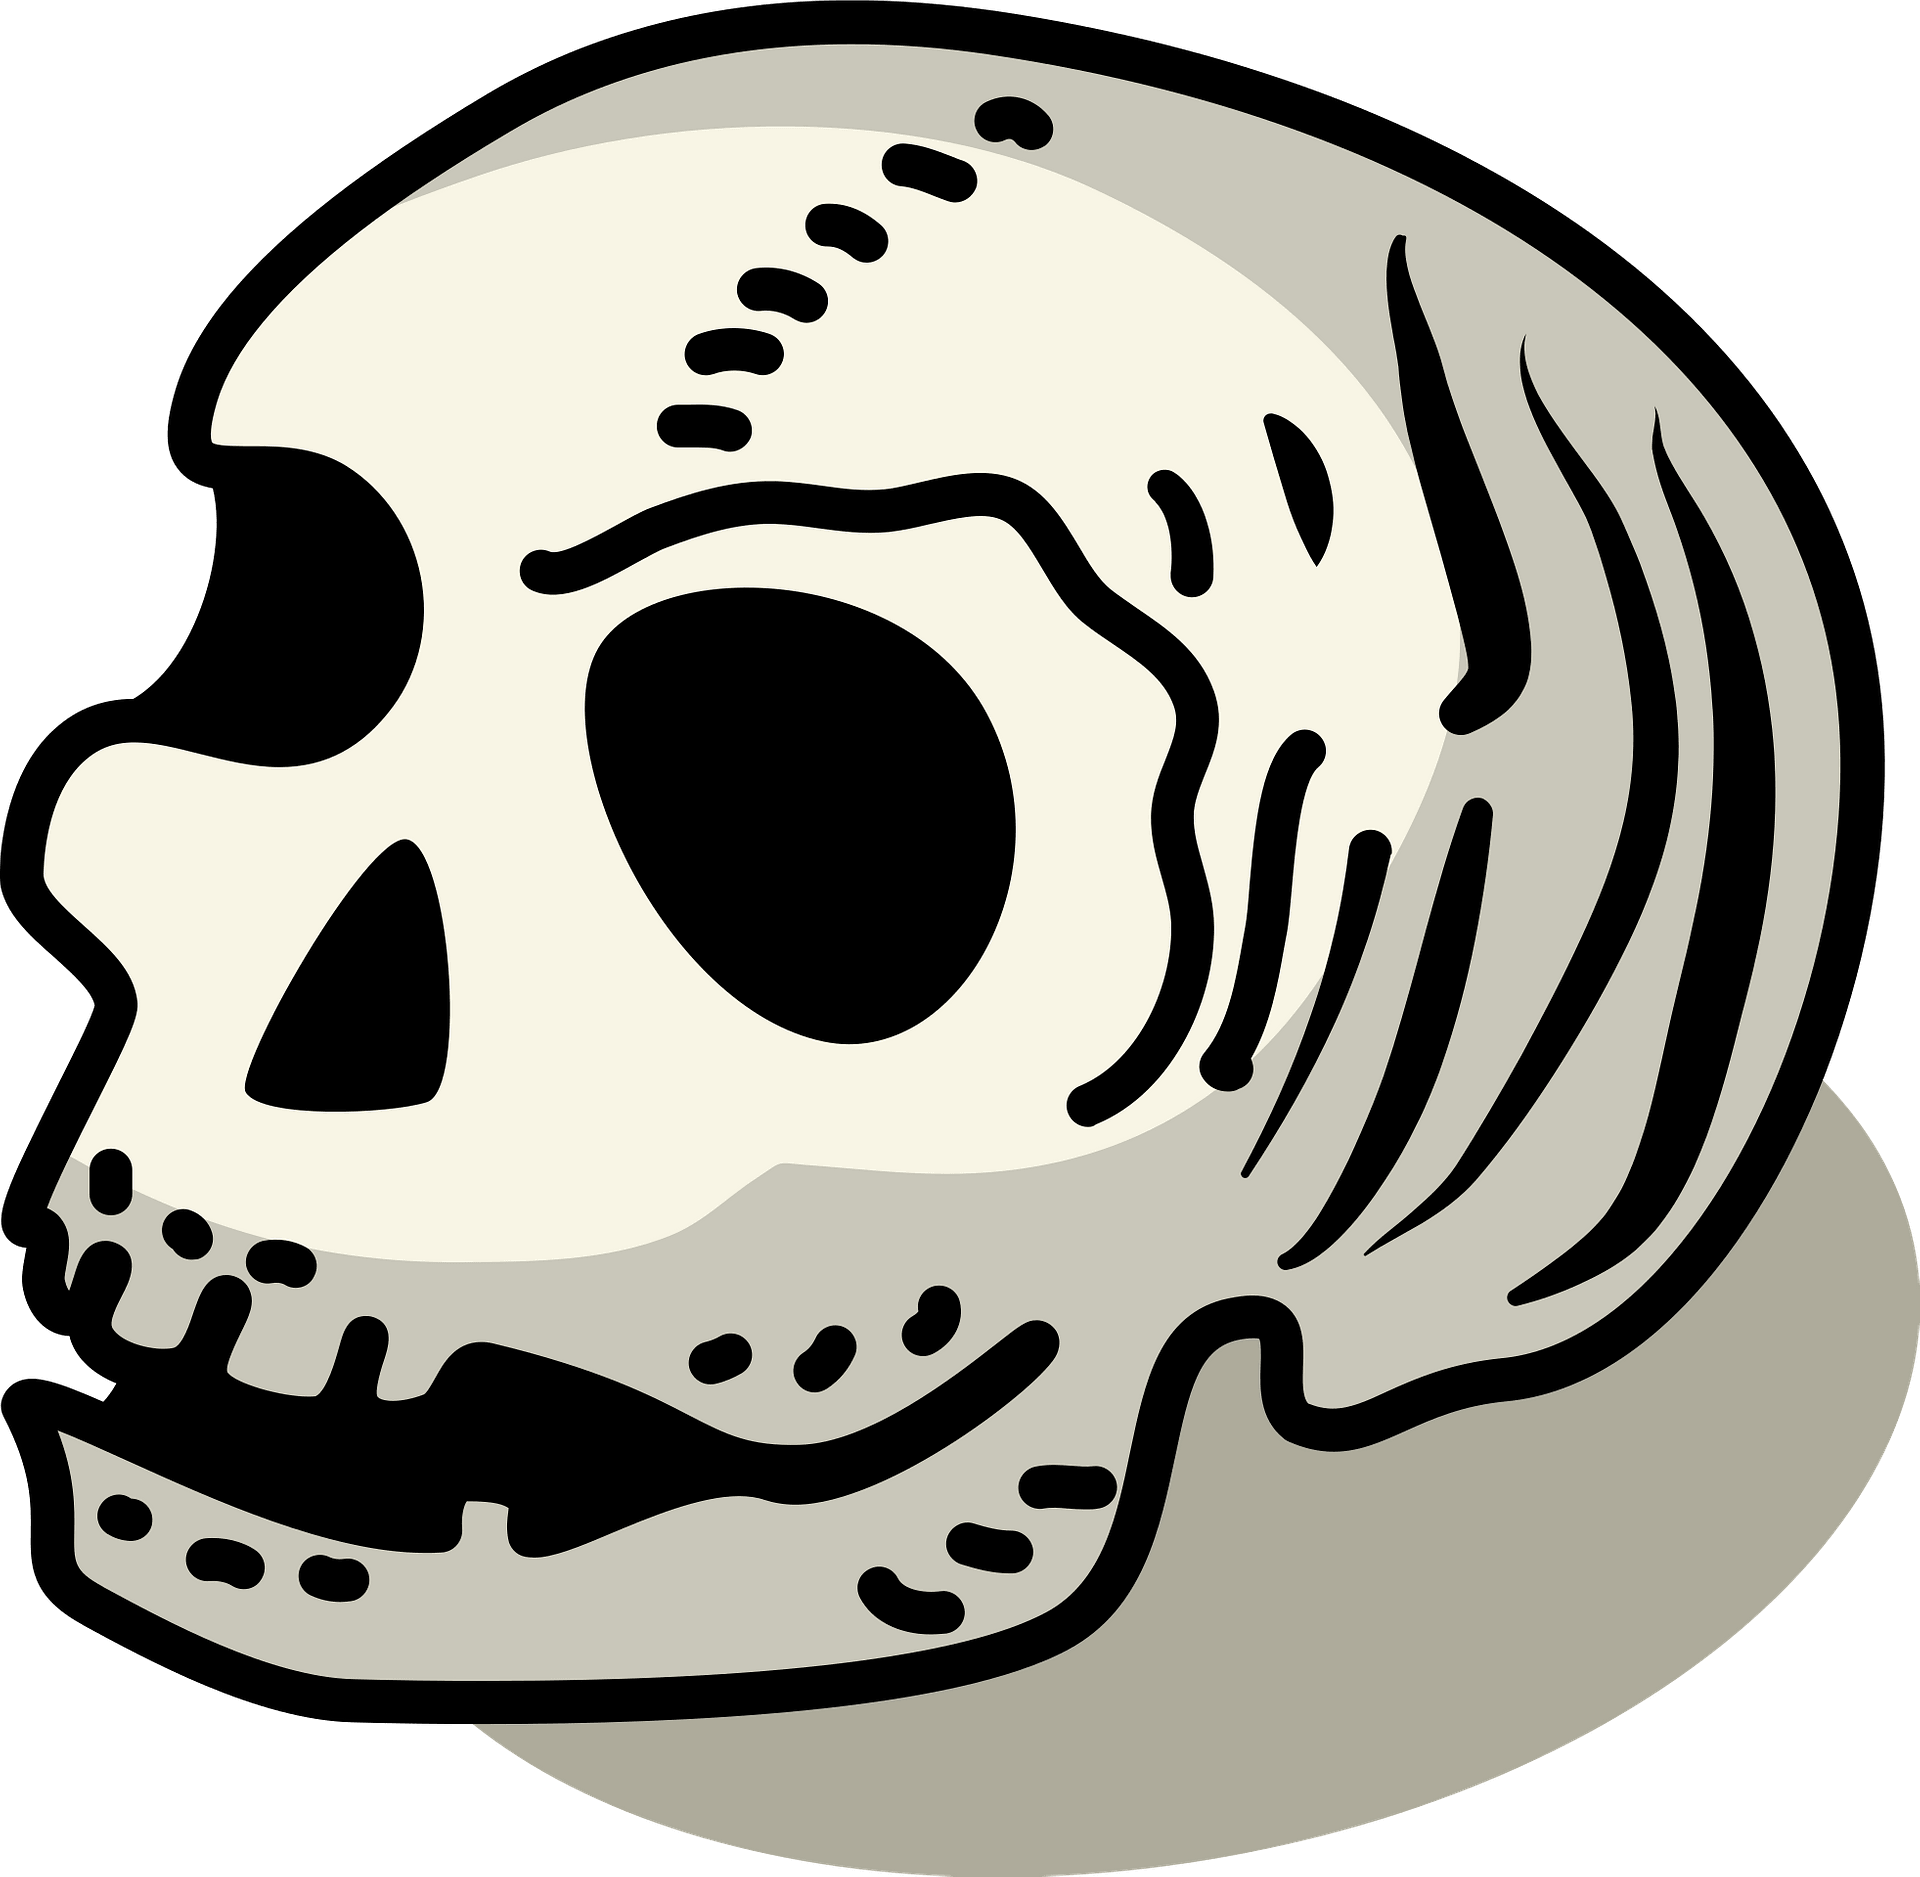 Skull And Crossbones Cartoon Clip Art, PNG, 700x490px, Skull And - Clip ...